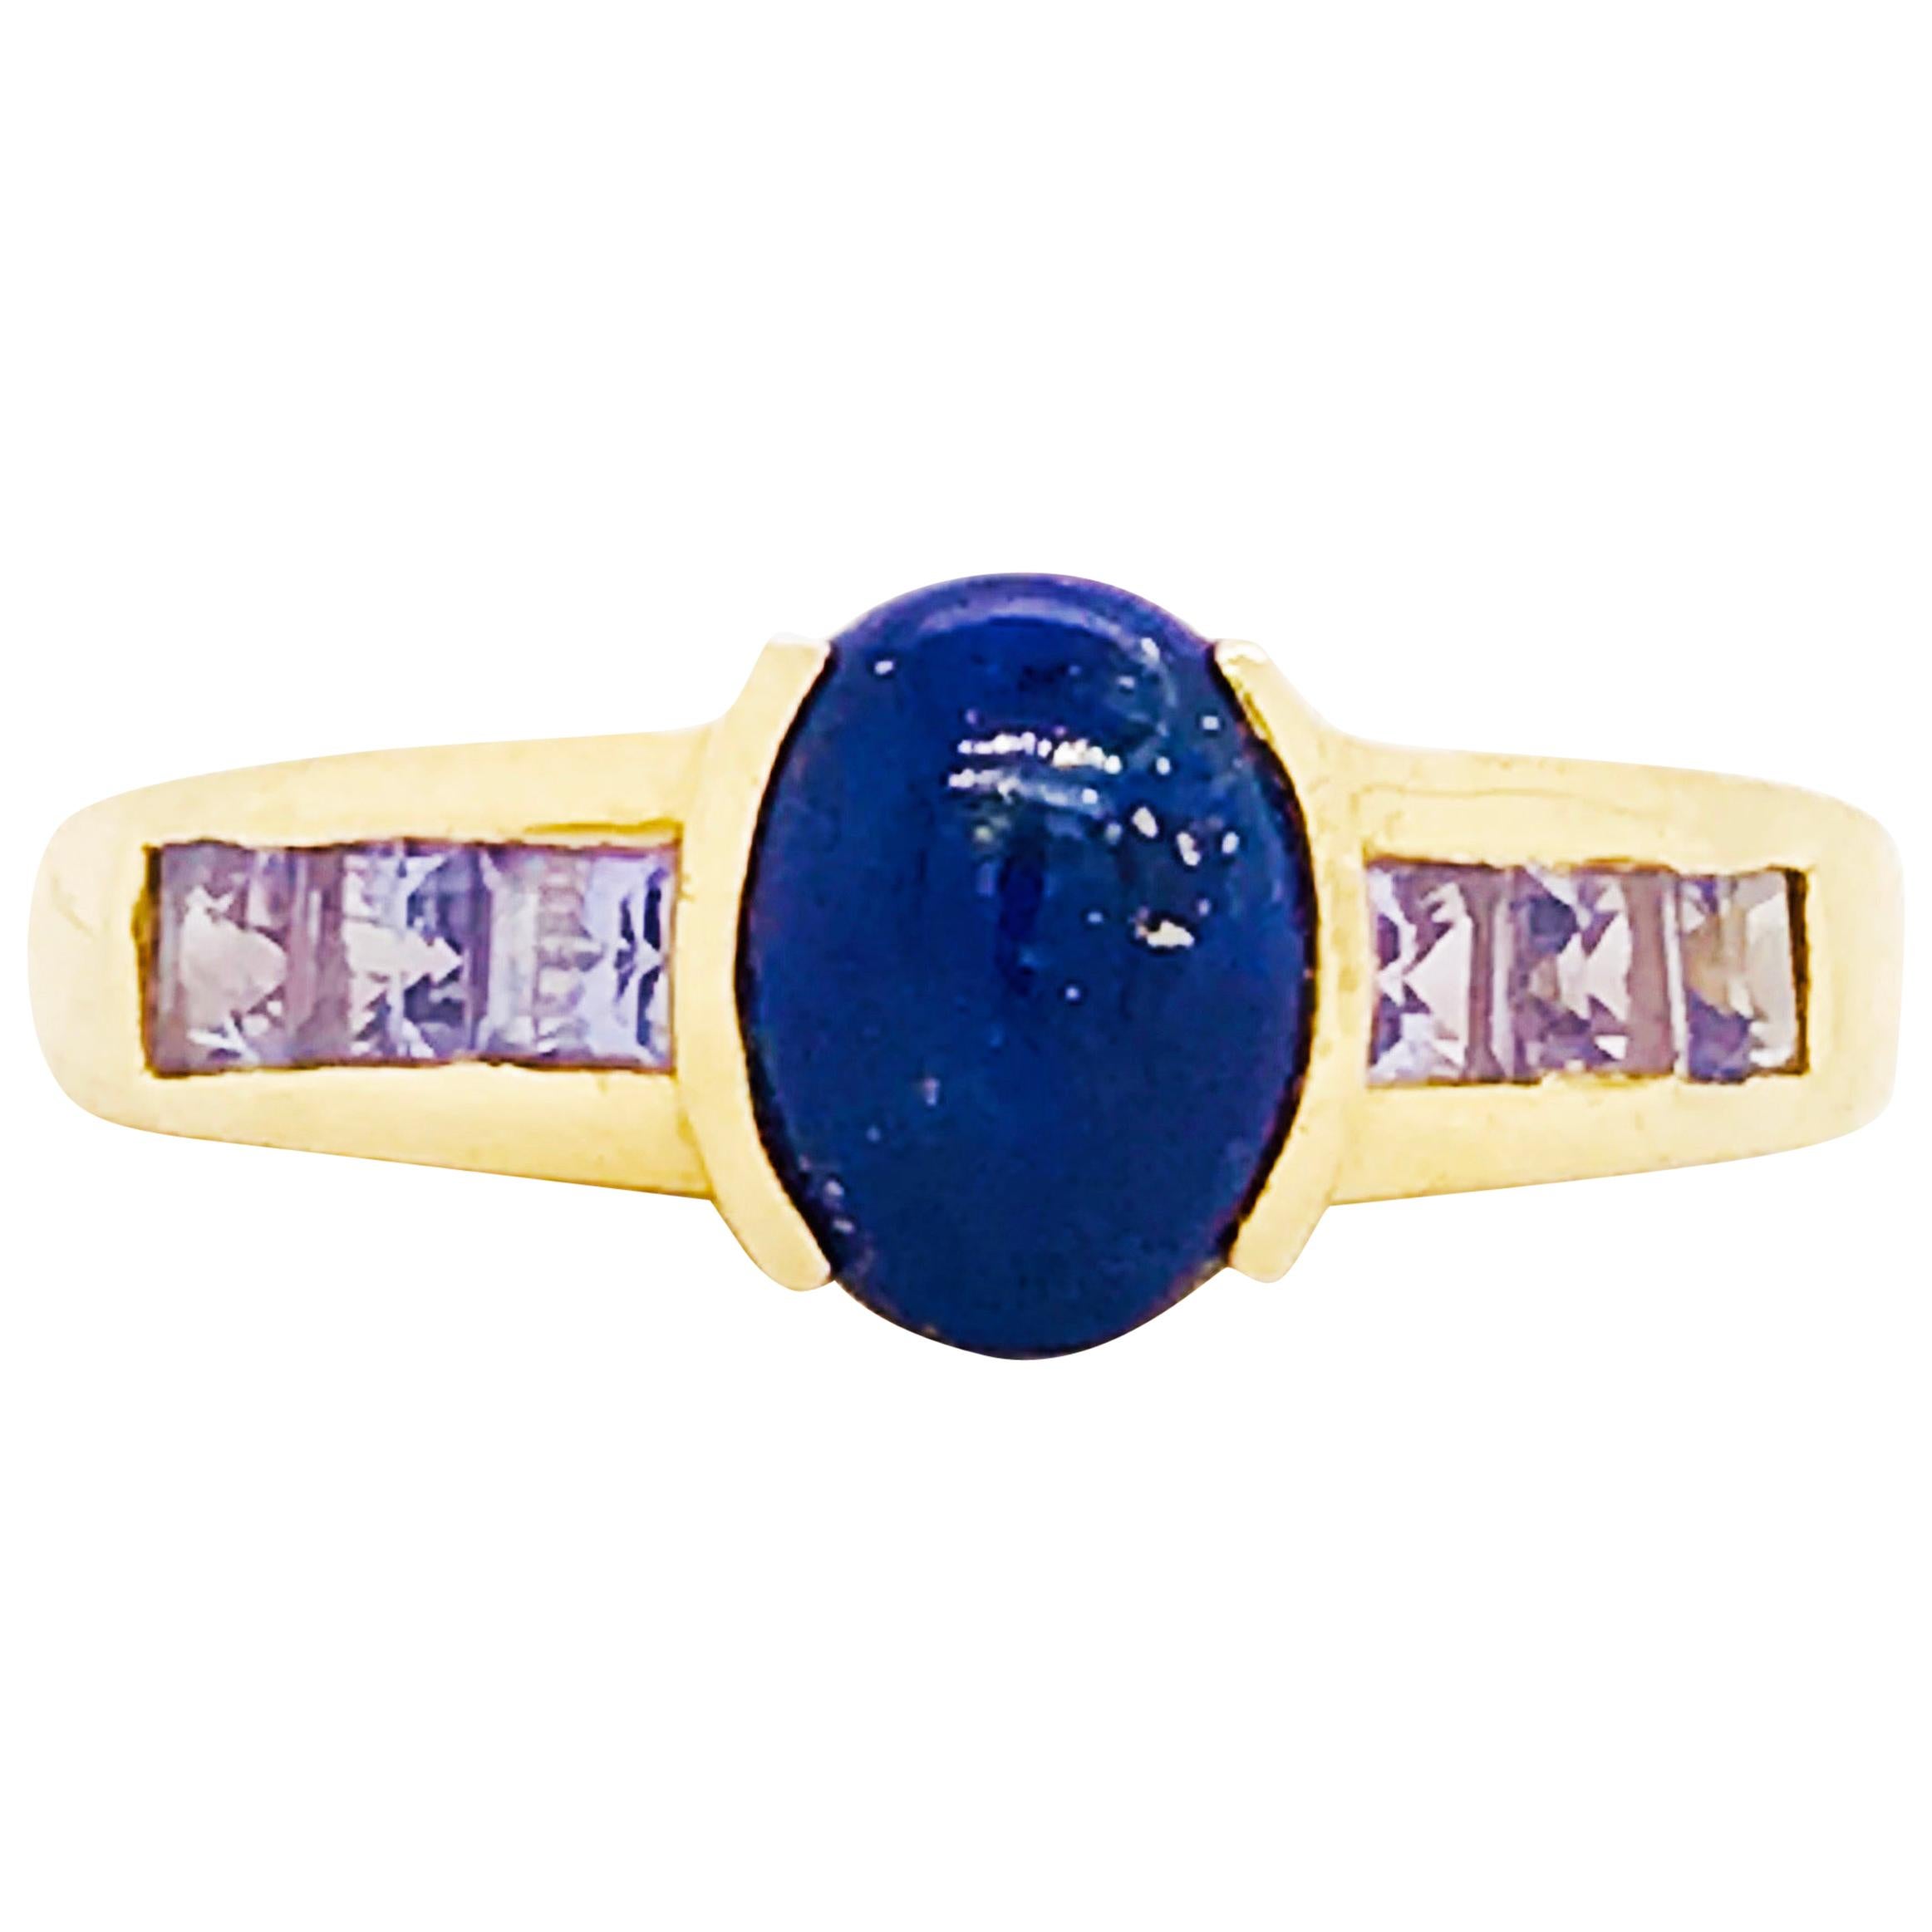 Blue Lapis and Tanzanite Gemstone Ring 14 Karat Gold Custom Design Fashion Ring